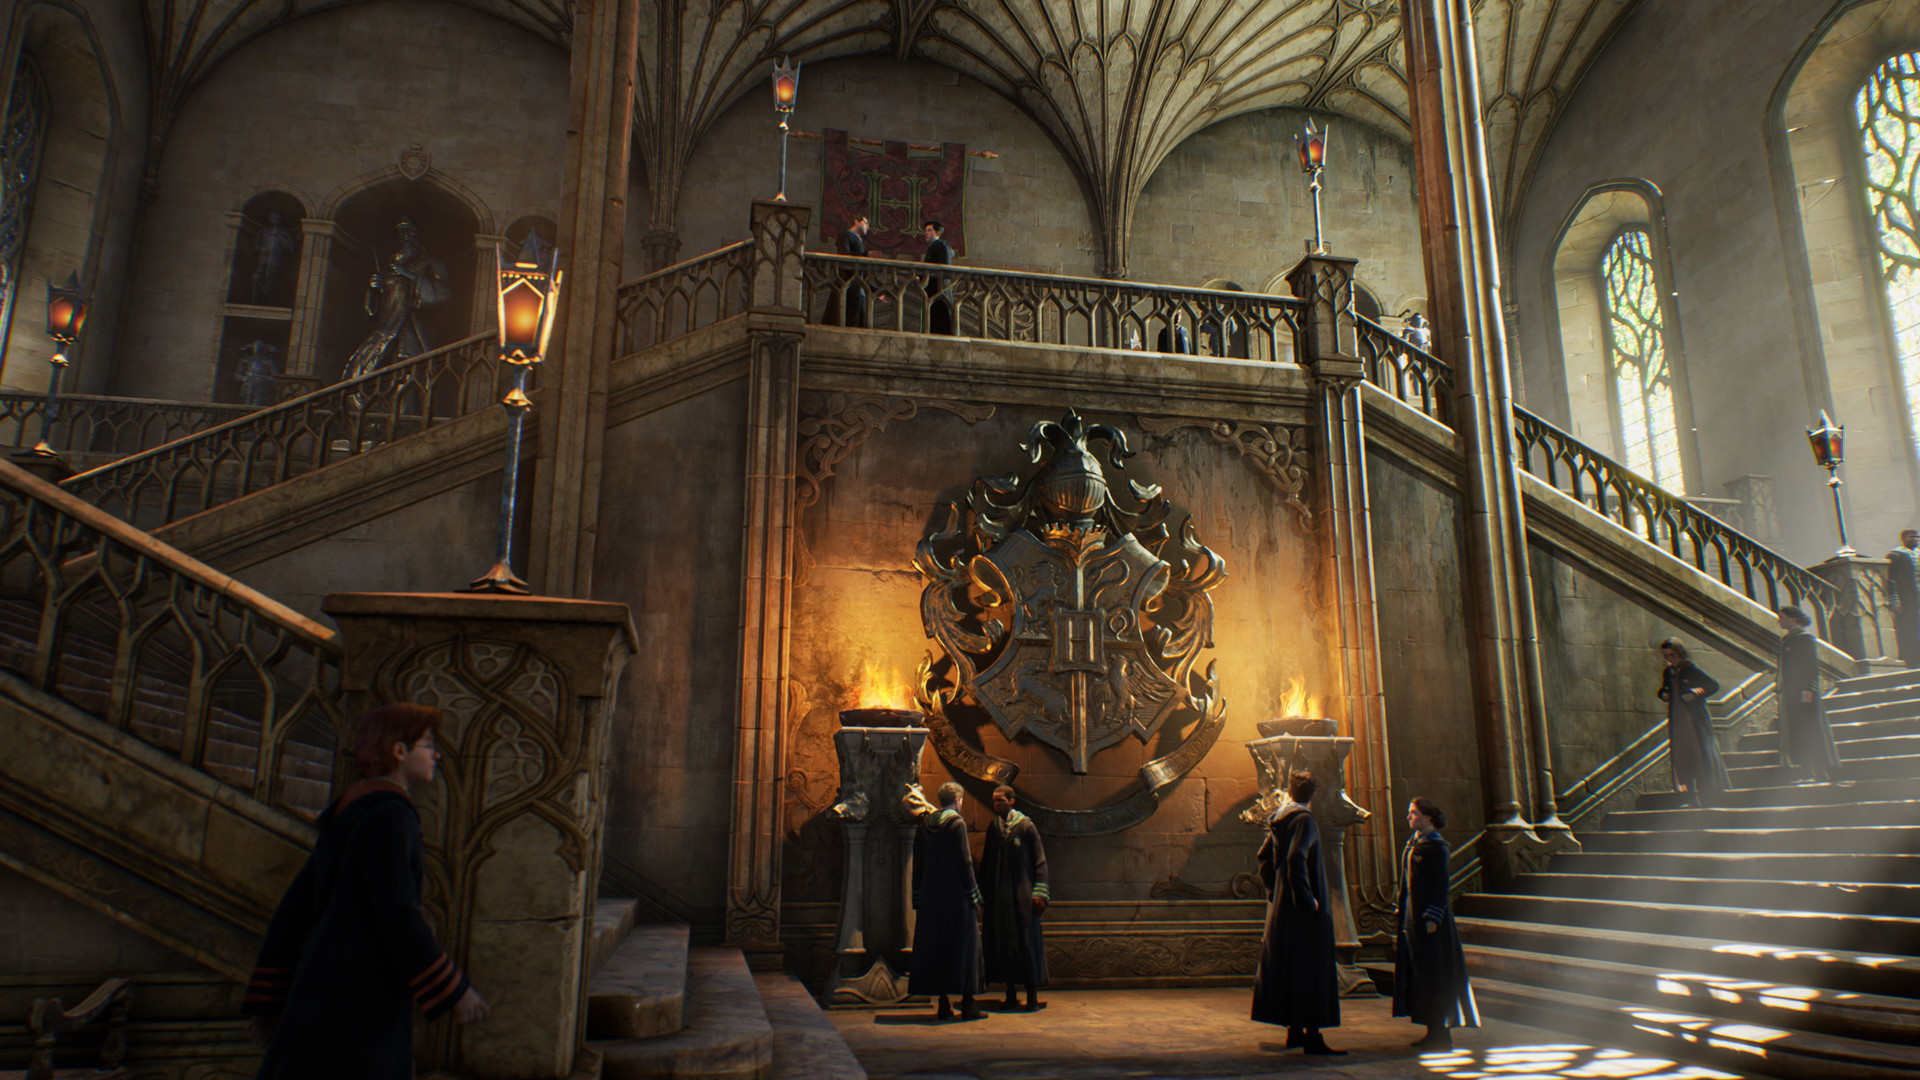 Hogwarts Legacy стала самой ожидаемой игрой в Steam — она обошла Starfield